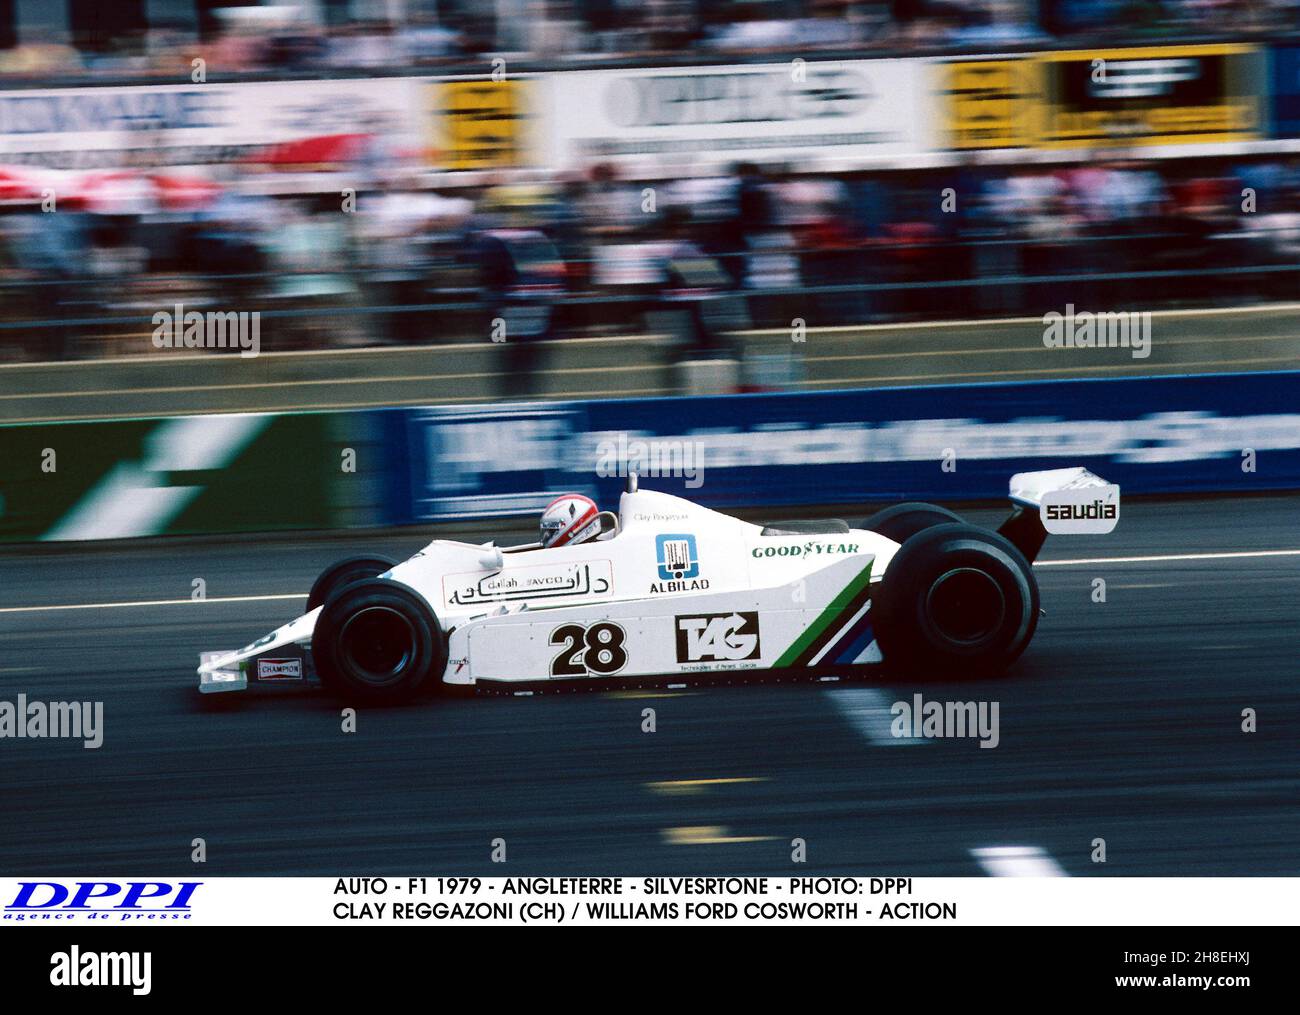 AUTO - F1 1979 - ANGLETERRE - SILVESRTONE - PHOTO: DPPI CLAY REGGAZONI (CH) / WILLIAMS FORD COSWORTH - ACTION Foto Stock